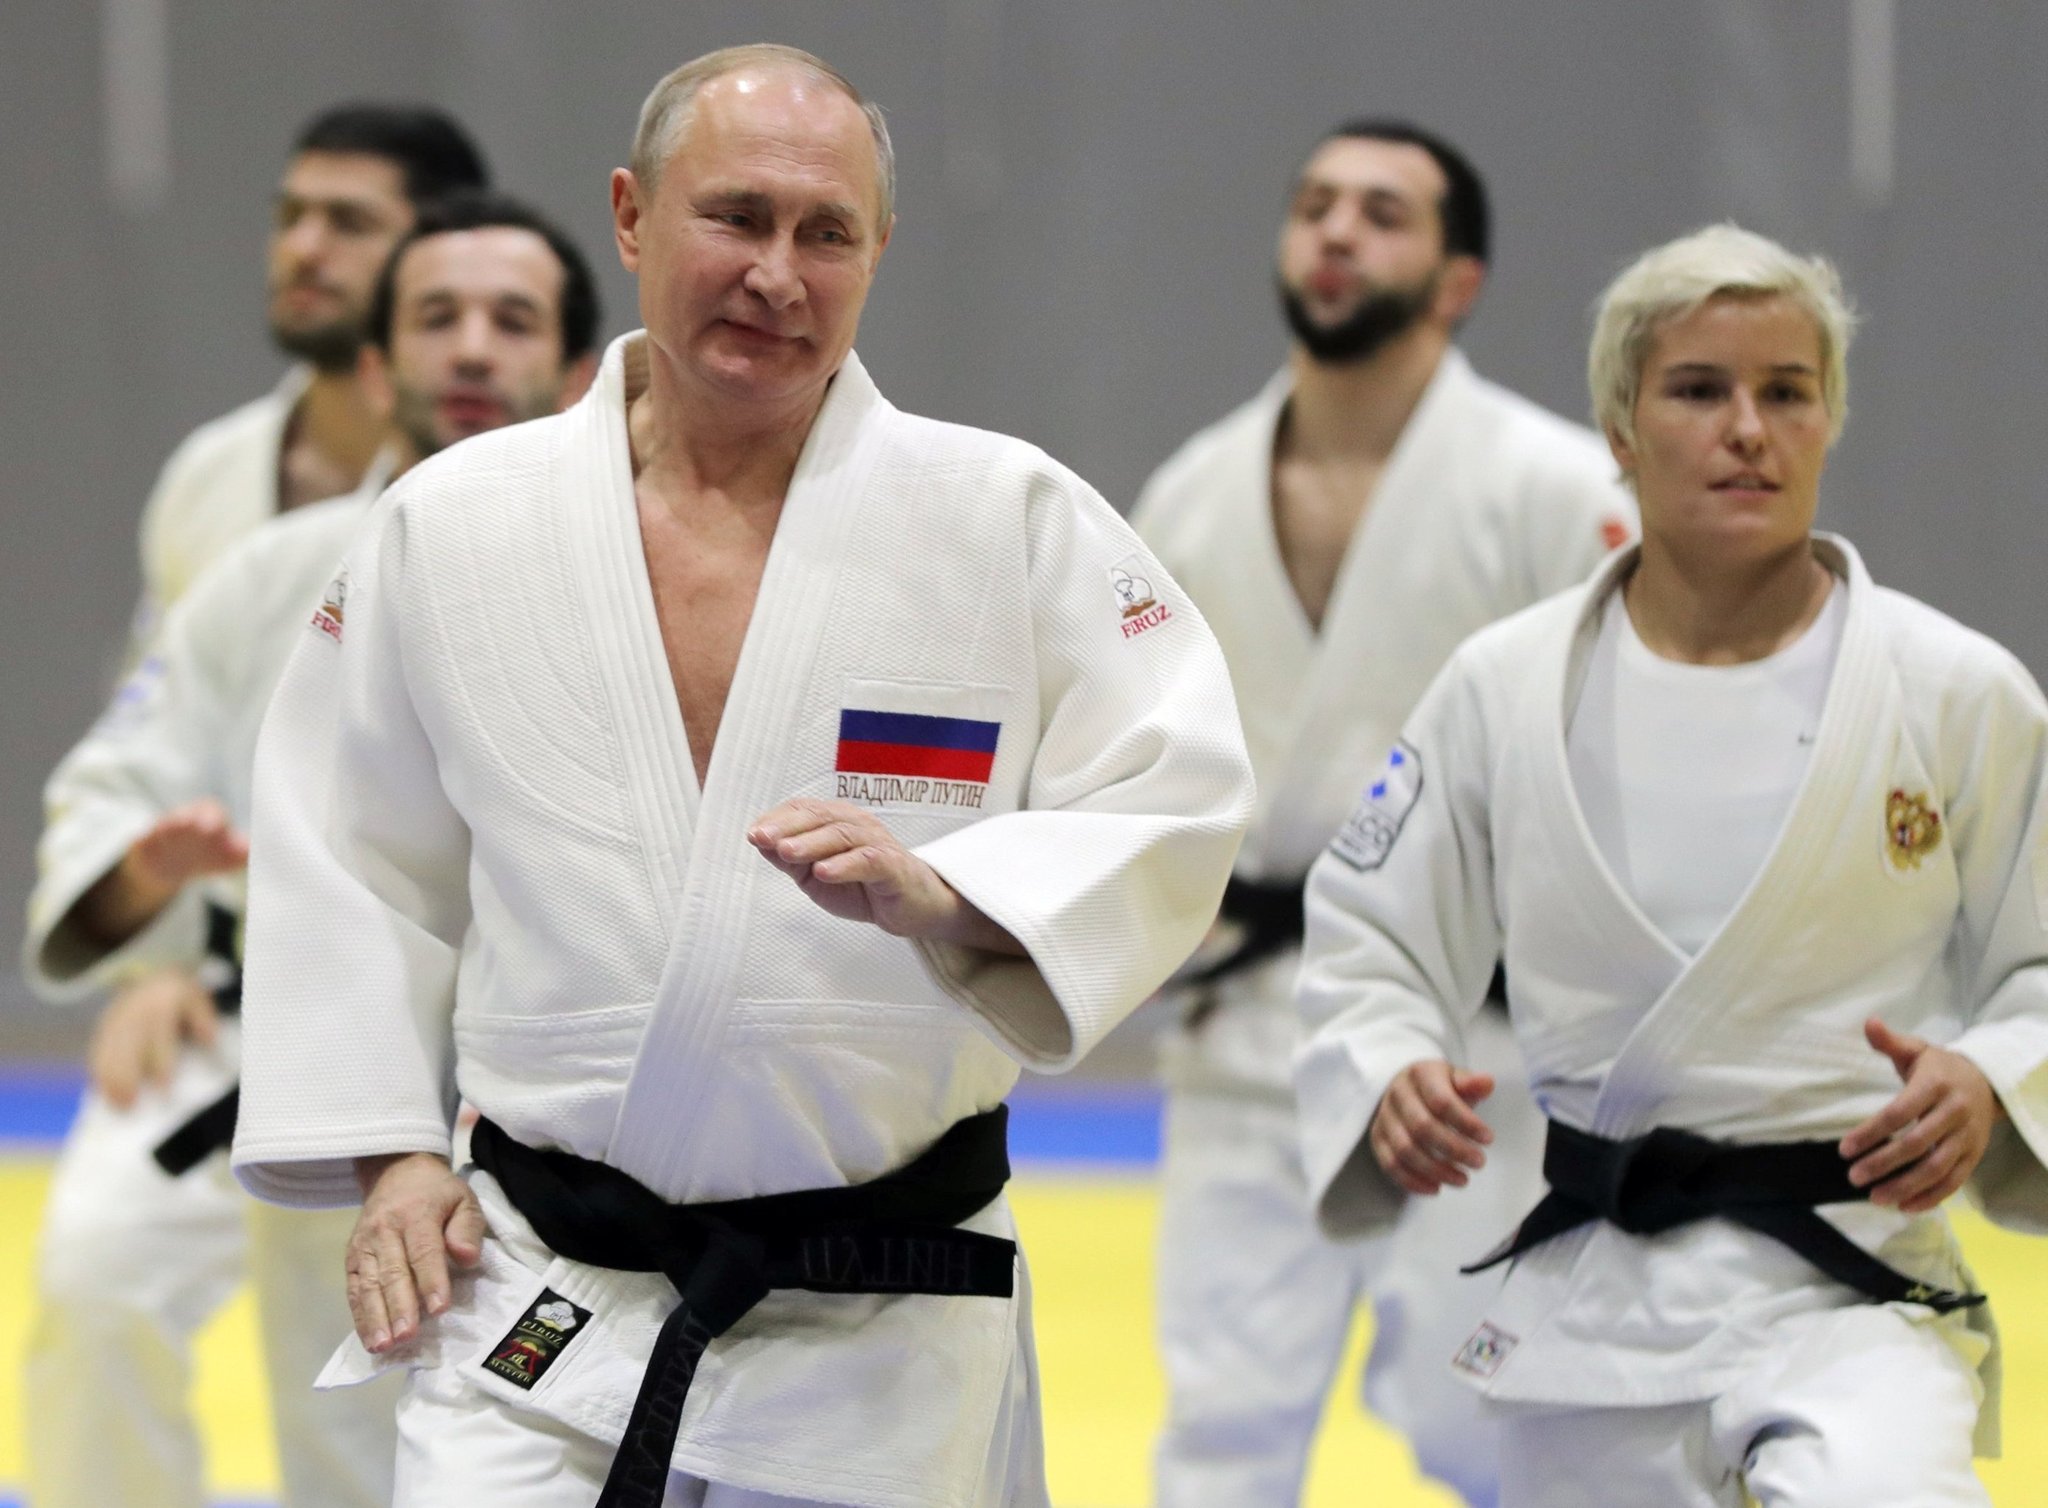 تعليق الرئاسة الفخرية للرئيس بوتين في رياضة الجودو الدولية watanserb.com